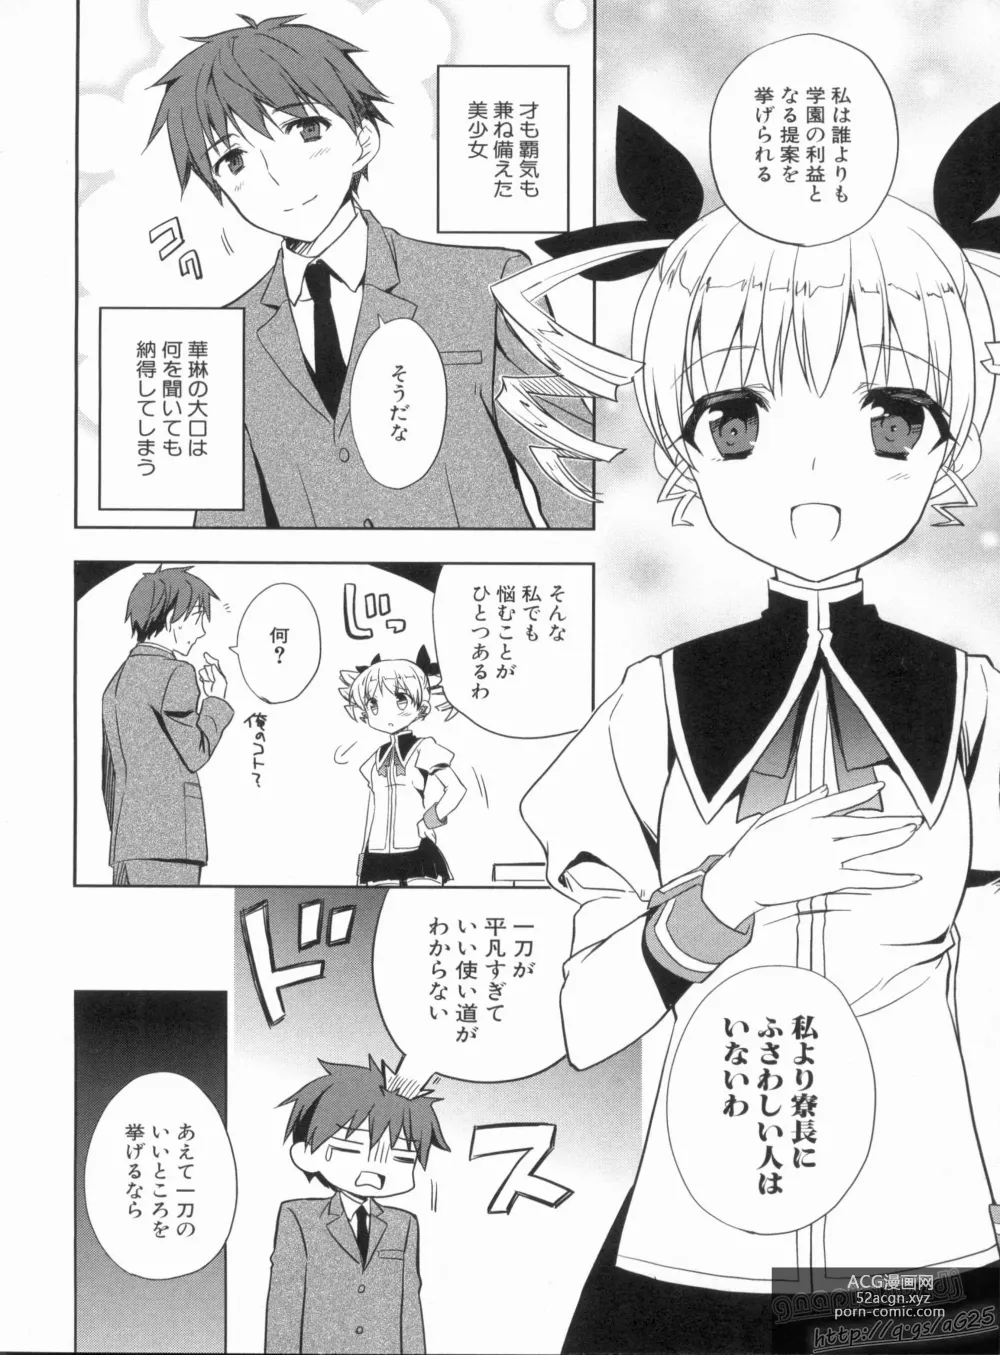 Page 20 of manga Shin Koihime Musou Gaishi Saiten VOL.3